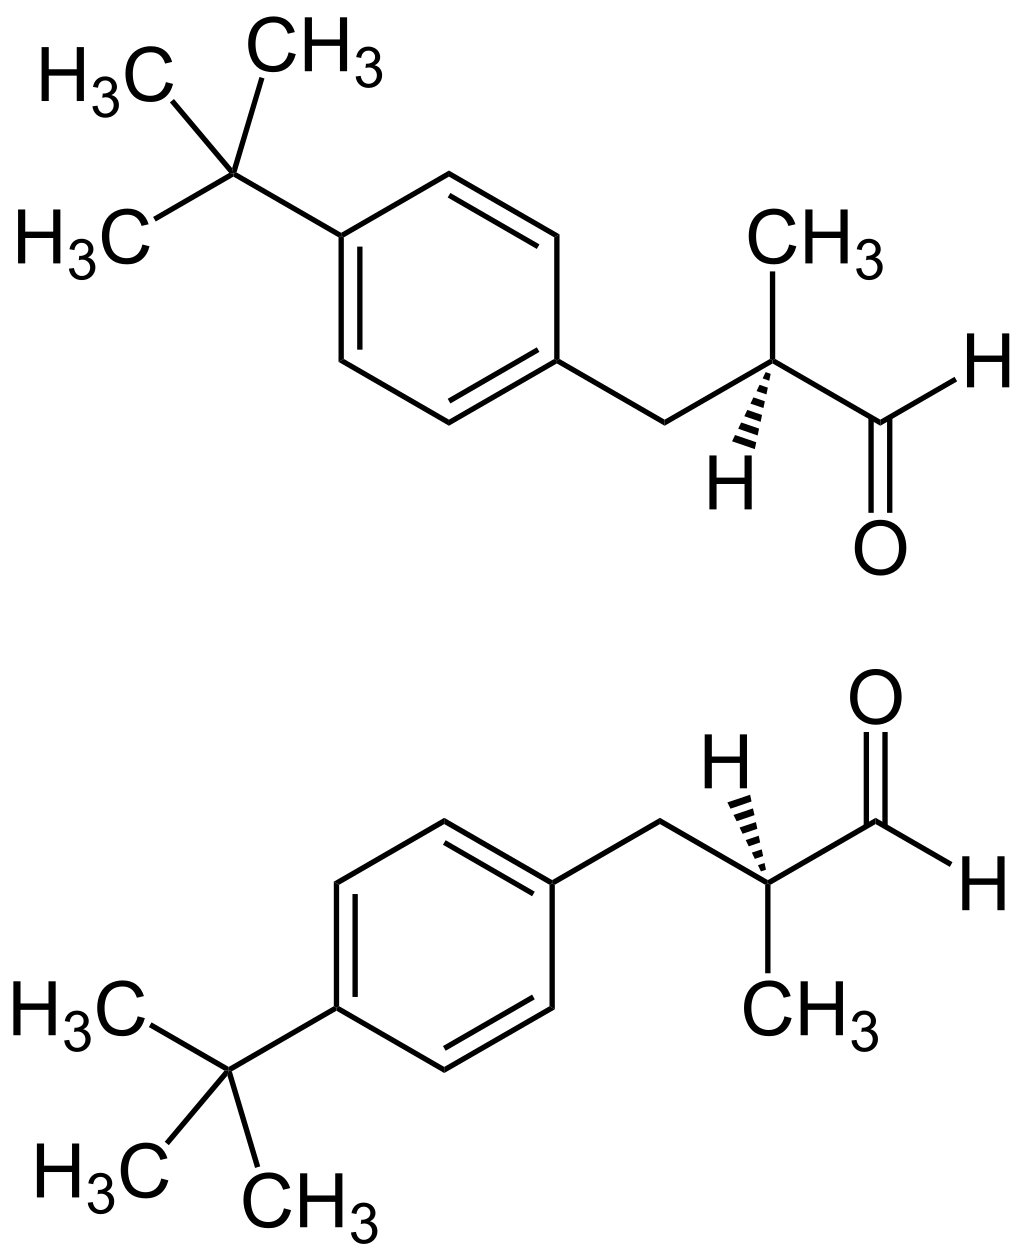 Strukturformel 1:1-Gemisch aus (R)-Form (oben) und (S)-Form (unten) von Butylphenyl Methylpropional (Lilial)